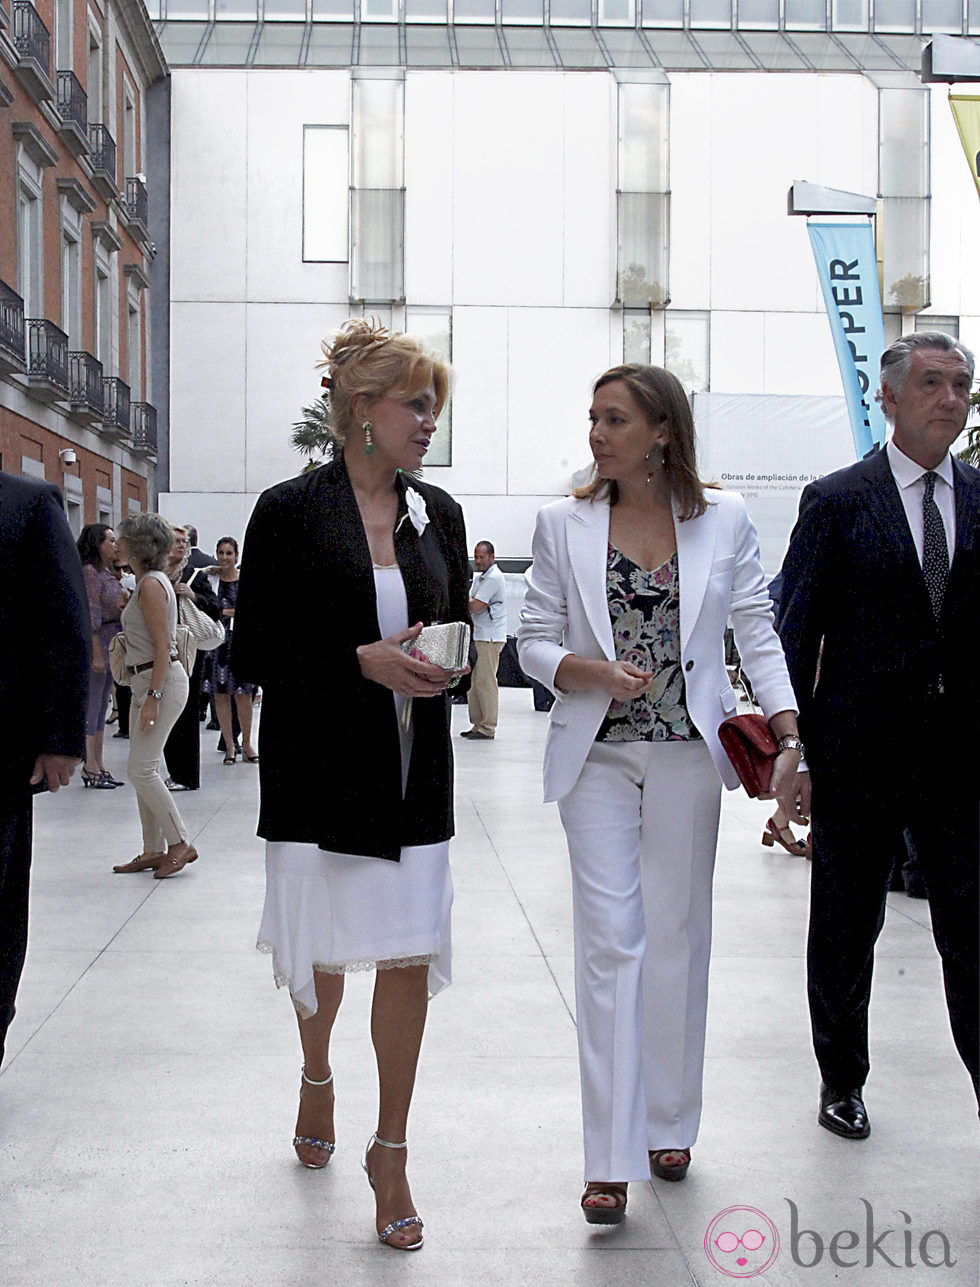 Carmen Cervera y Elvira Fernández Balboa en la inauguración de la exposición 'Hopper'